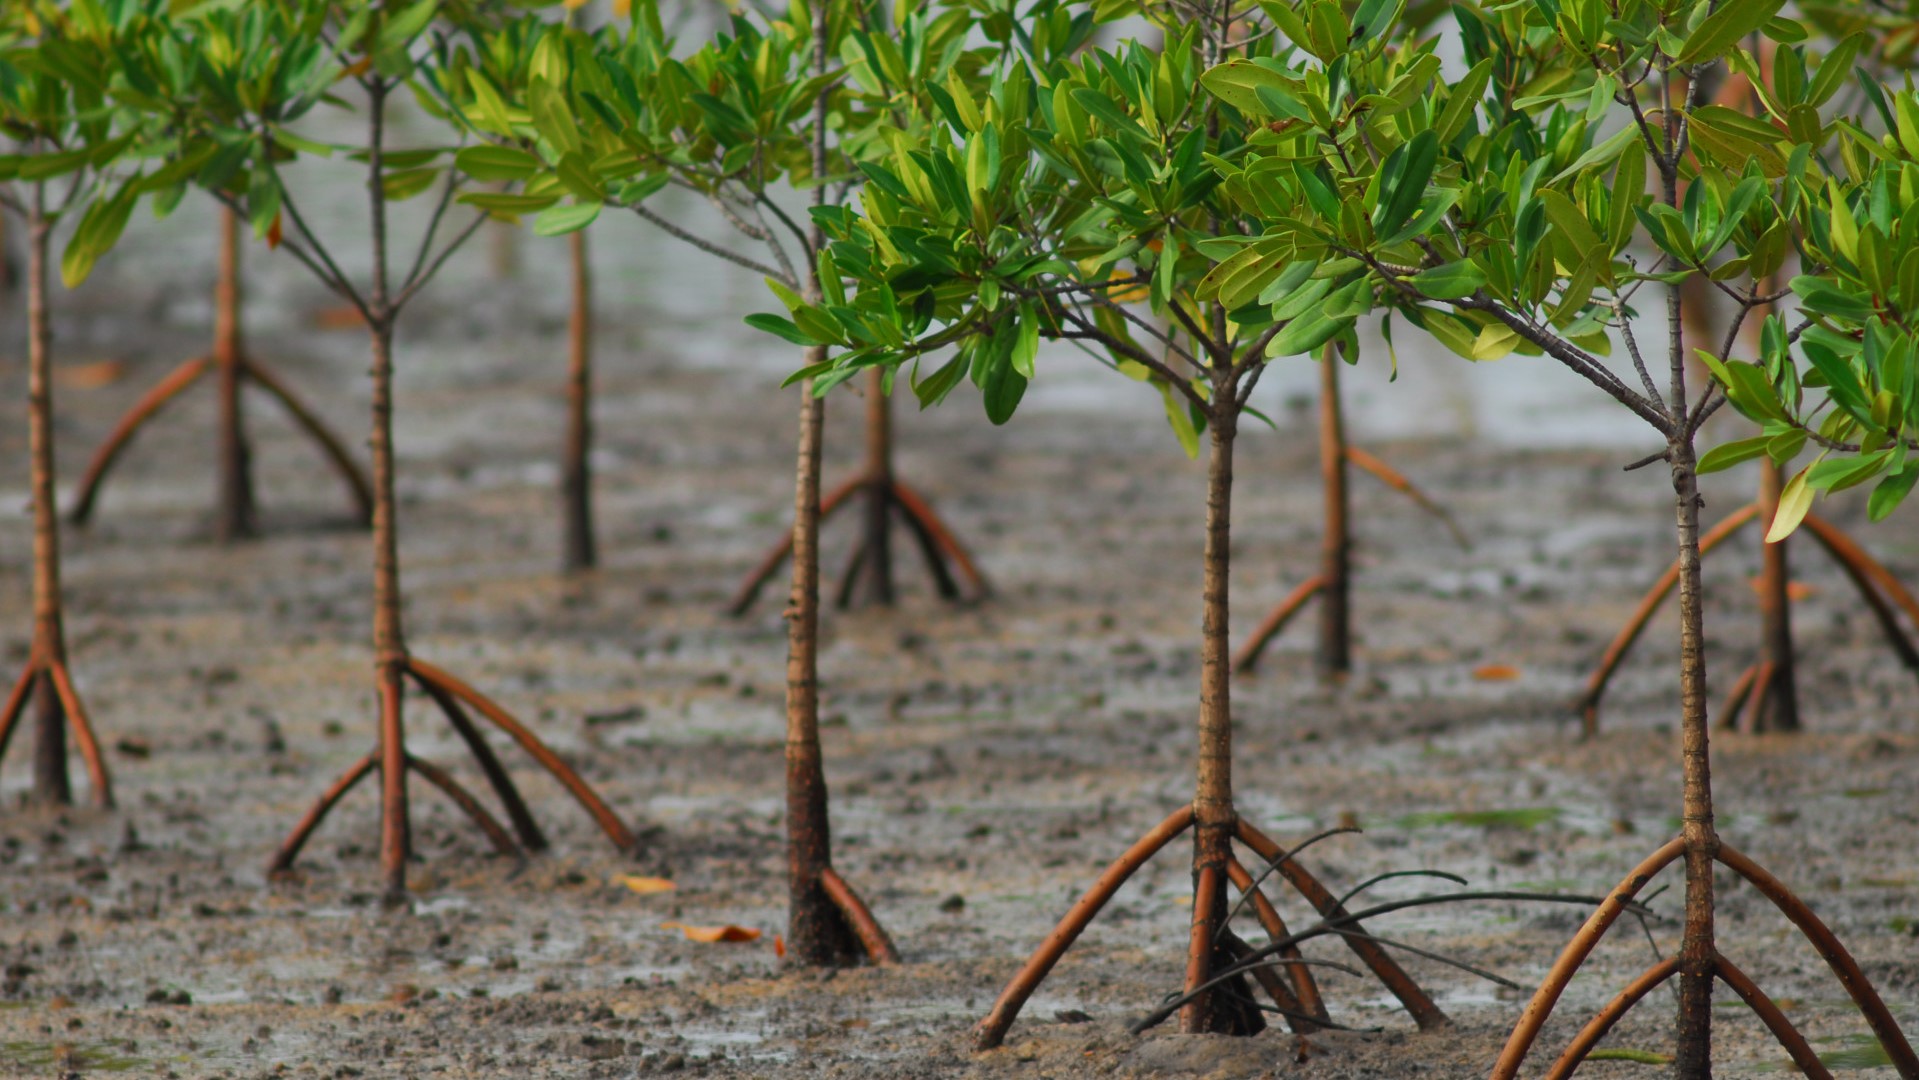 Mangroves-replanted-Saloum-Senegal-Jeff-Barbee-2007-e1452163527195